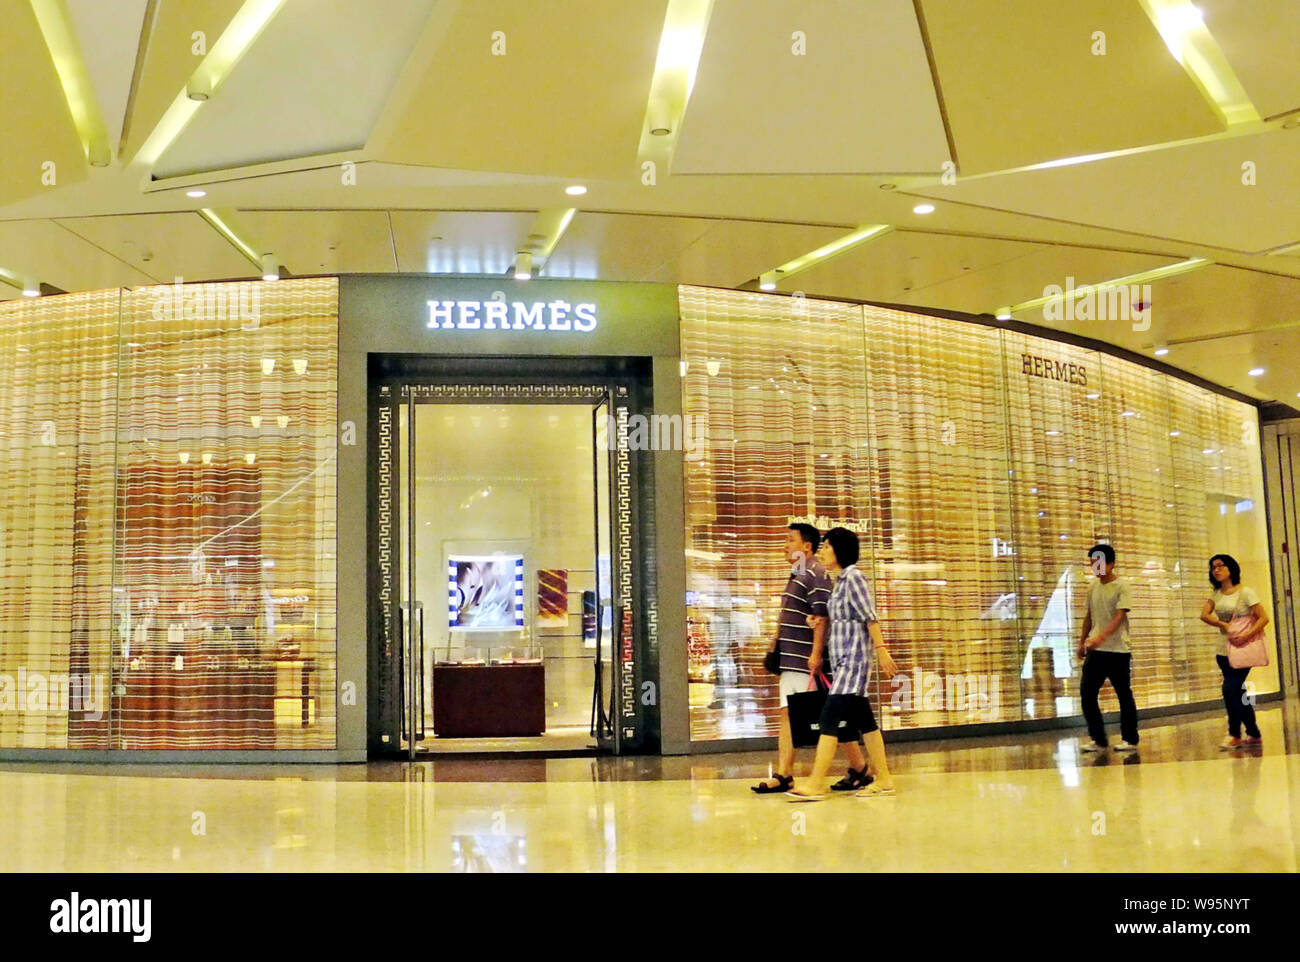 hermes galleria mall